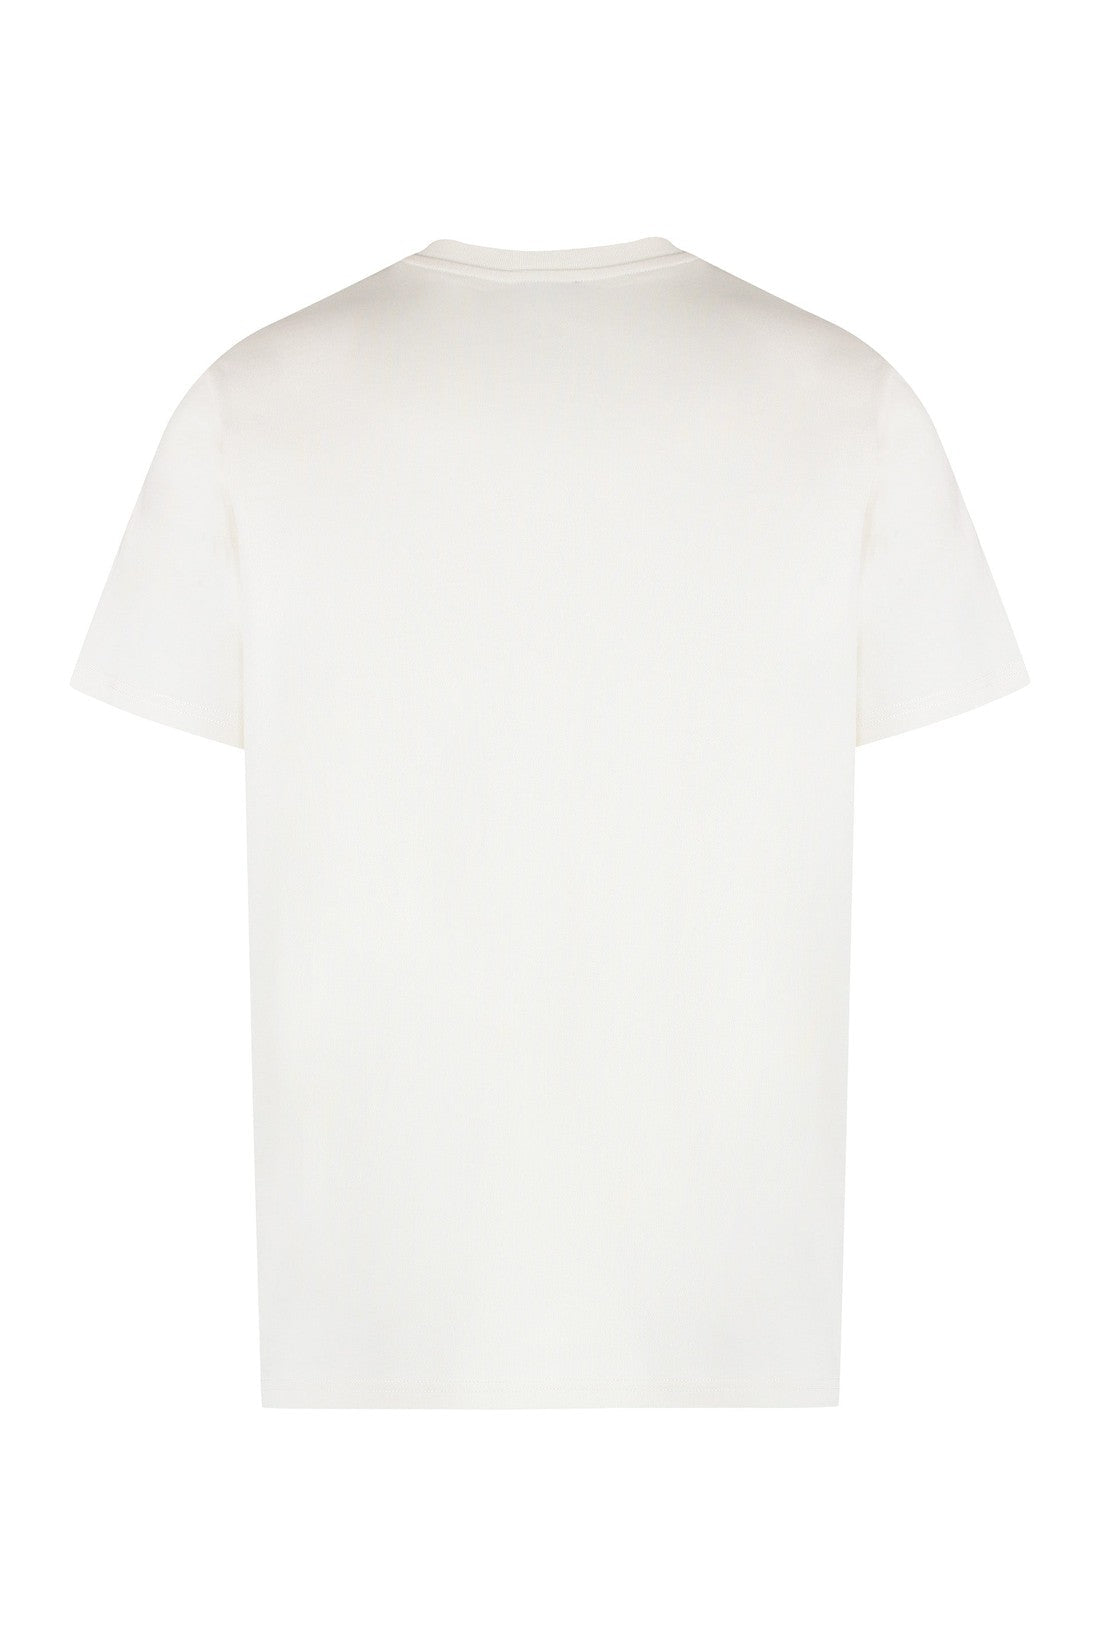 A.P.C.-OUTLET-SALE-Raymond cotton crew-neck T-shirt-ARCHIVIST